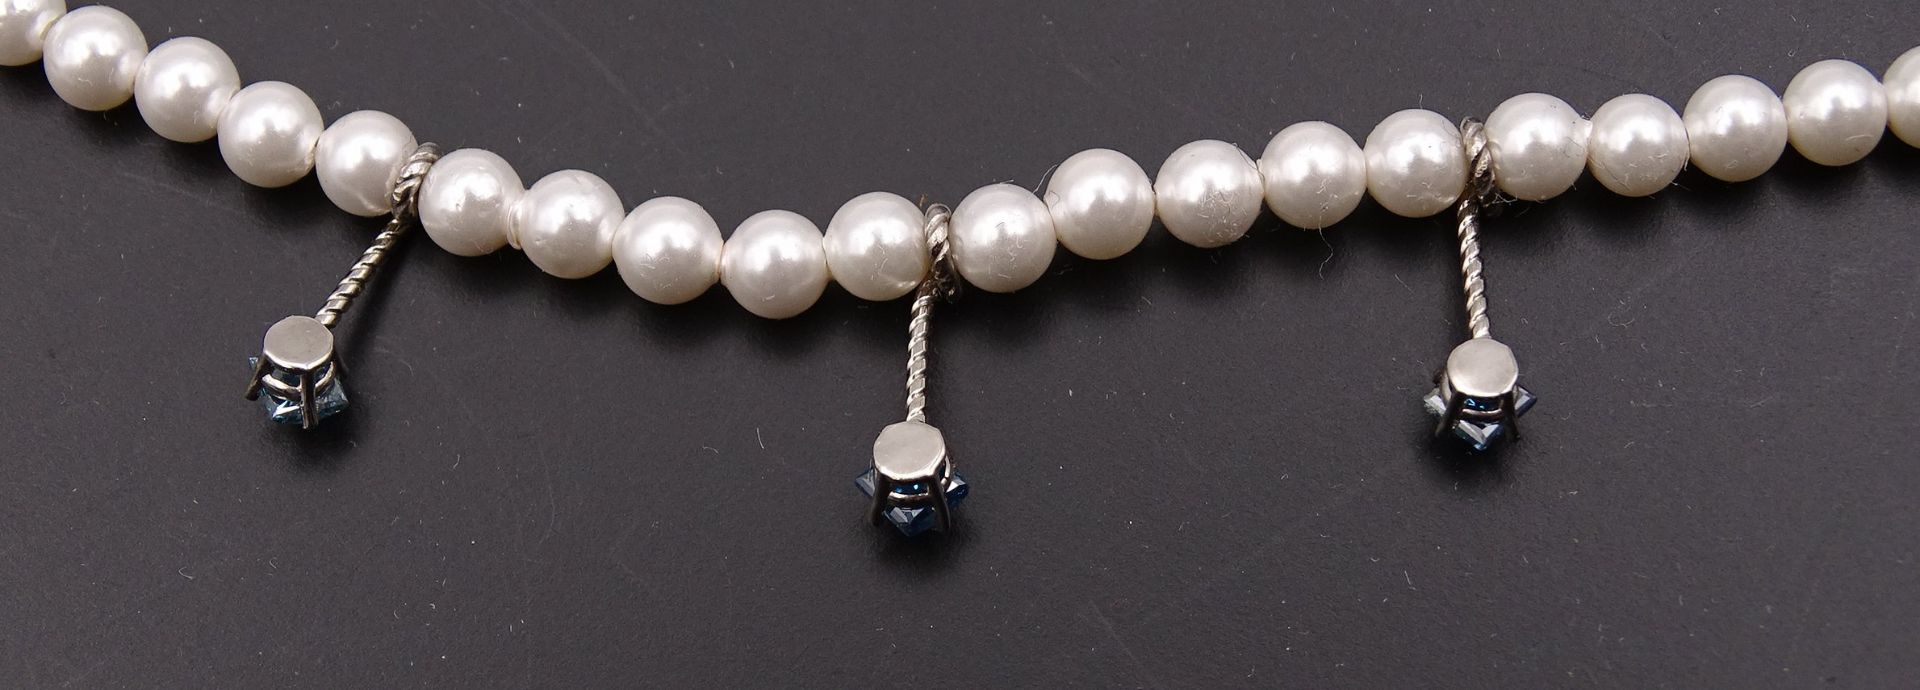 Perlen Halskette mit blauen Diamanten zus. 0,45ct., Gold 14K , L. 42cm, Perlen D. 3,9mm, 9,6g. - Bild 6 aus 6